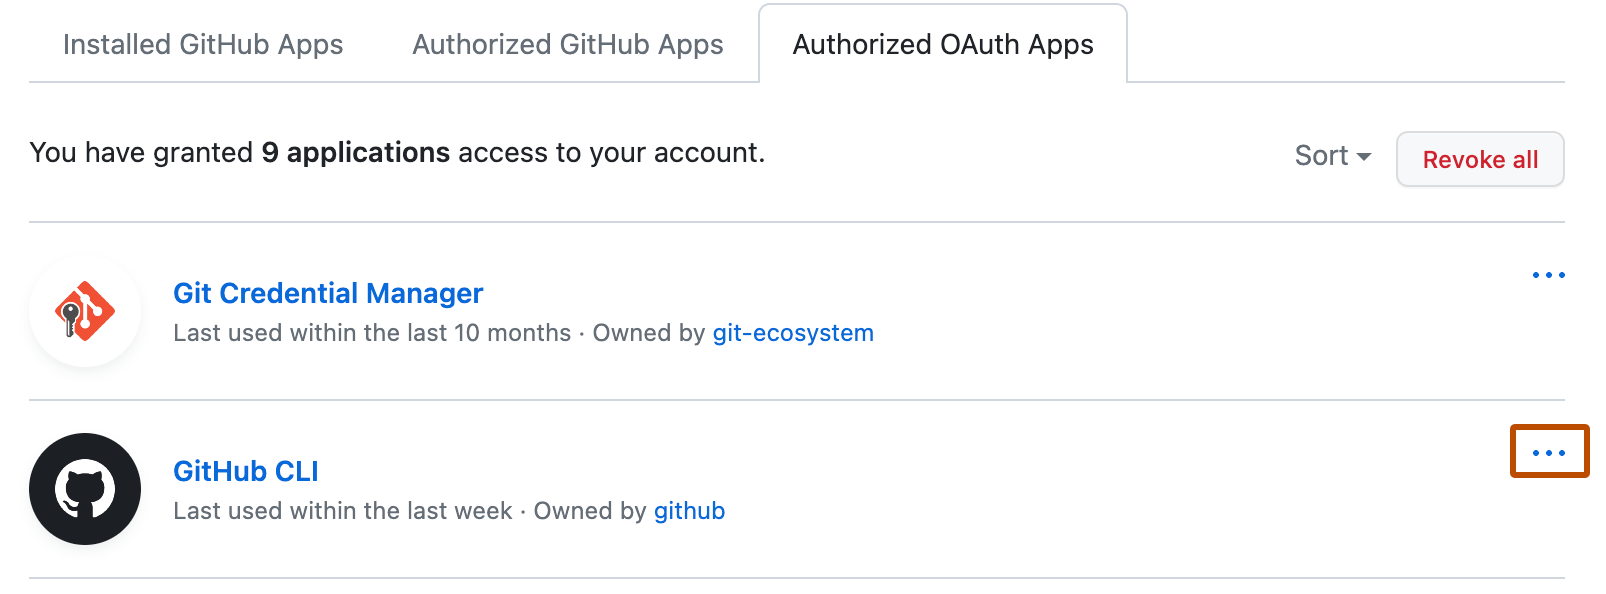 권한 있는 OAuth Apps 목록